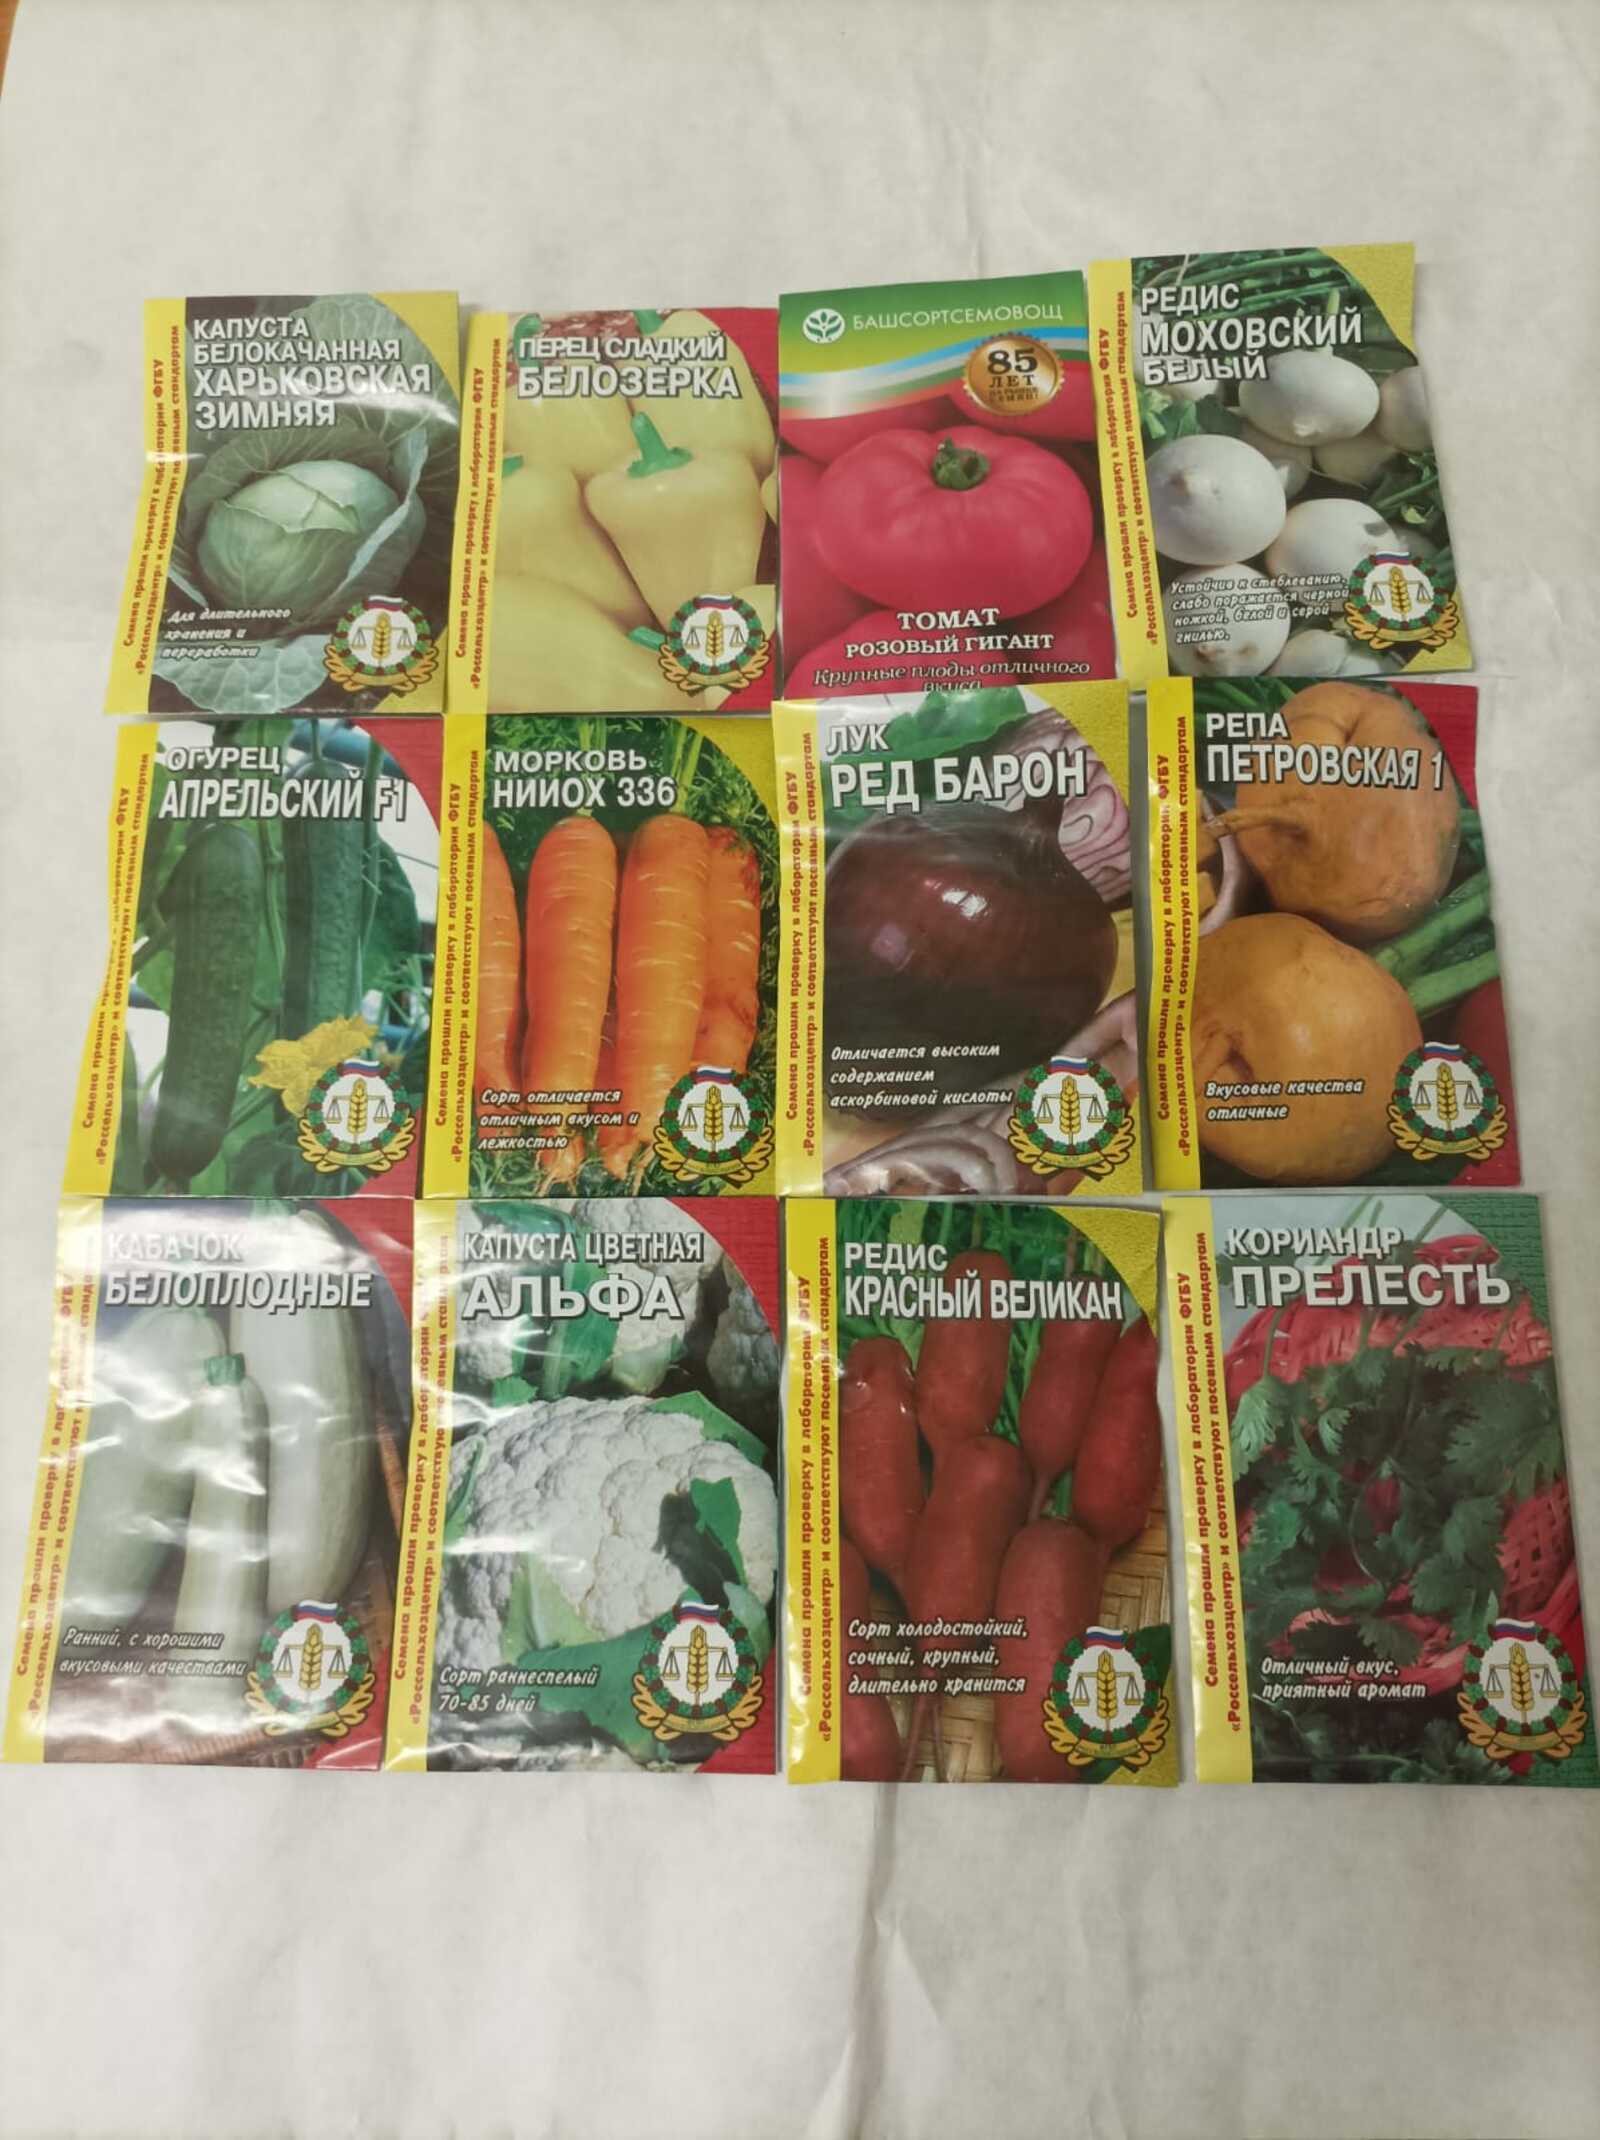 Как не ошибиться при покупке семян?